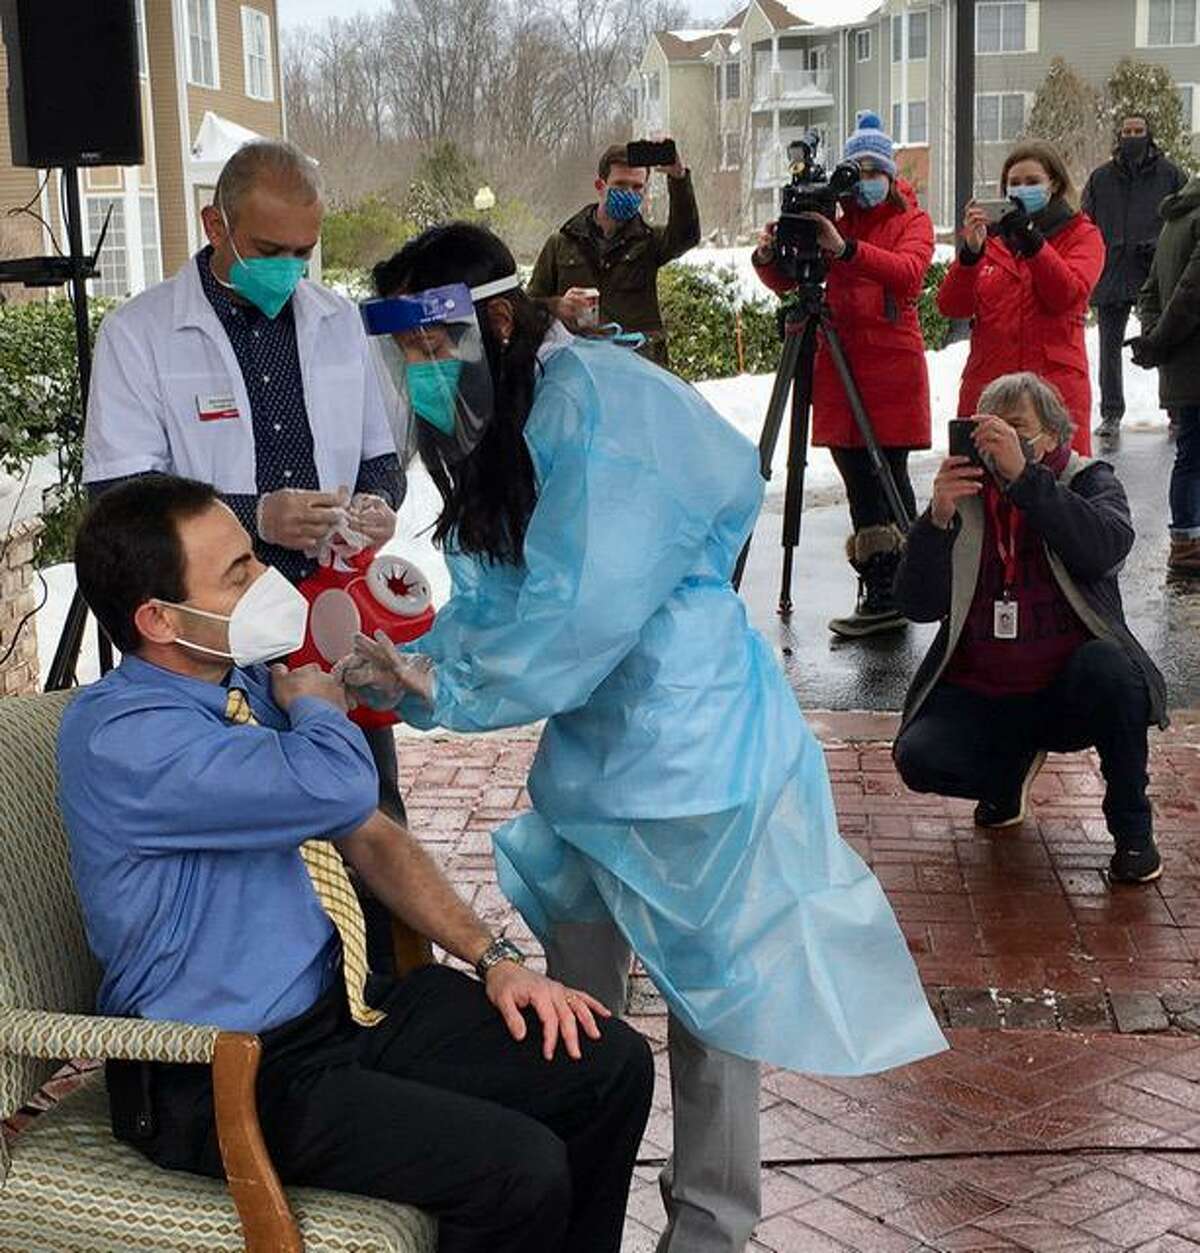 Dr. Richard Feifer gets vaccinated outside The Reservoir nursing home in West Hartford.